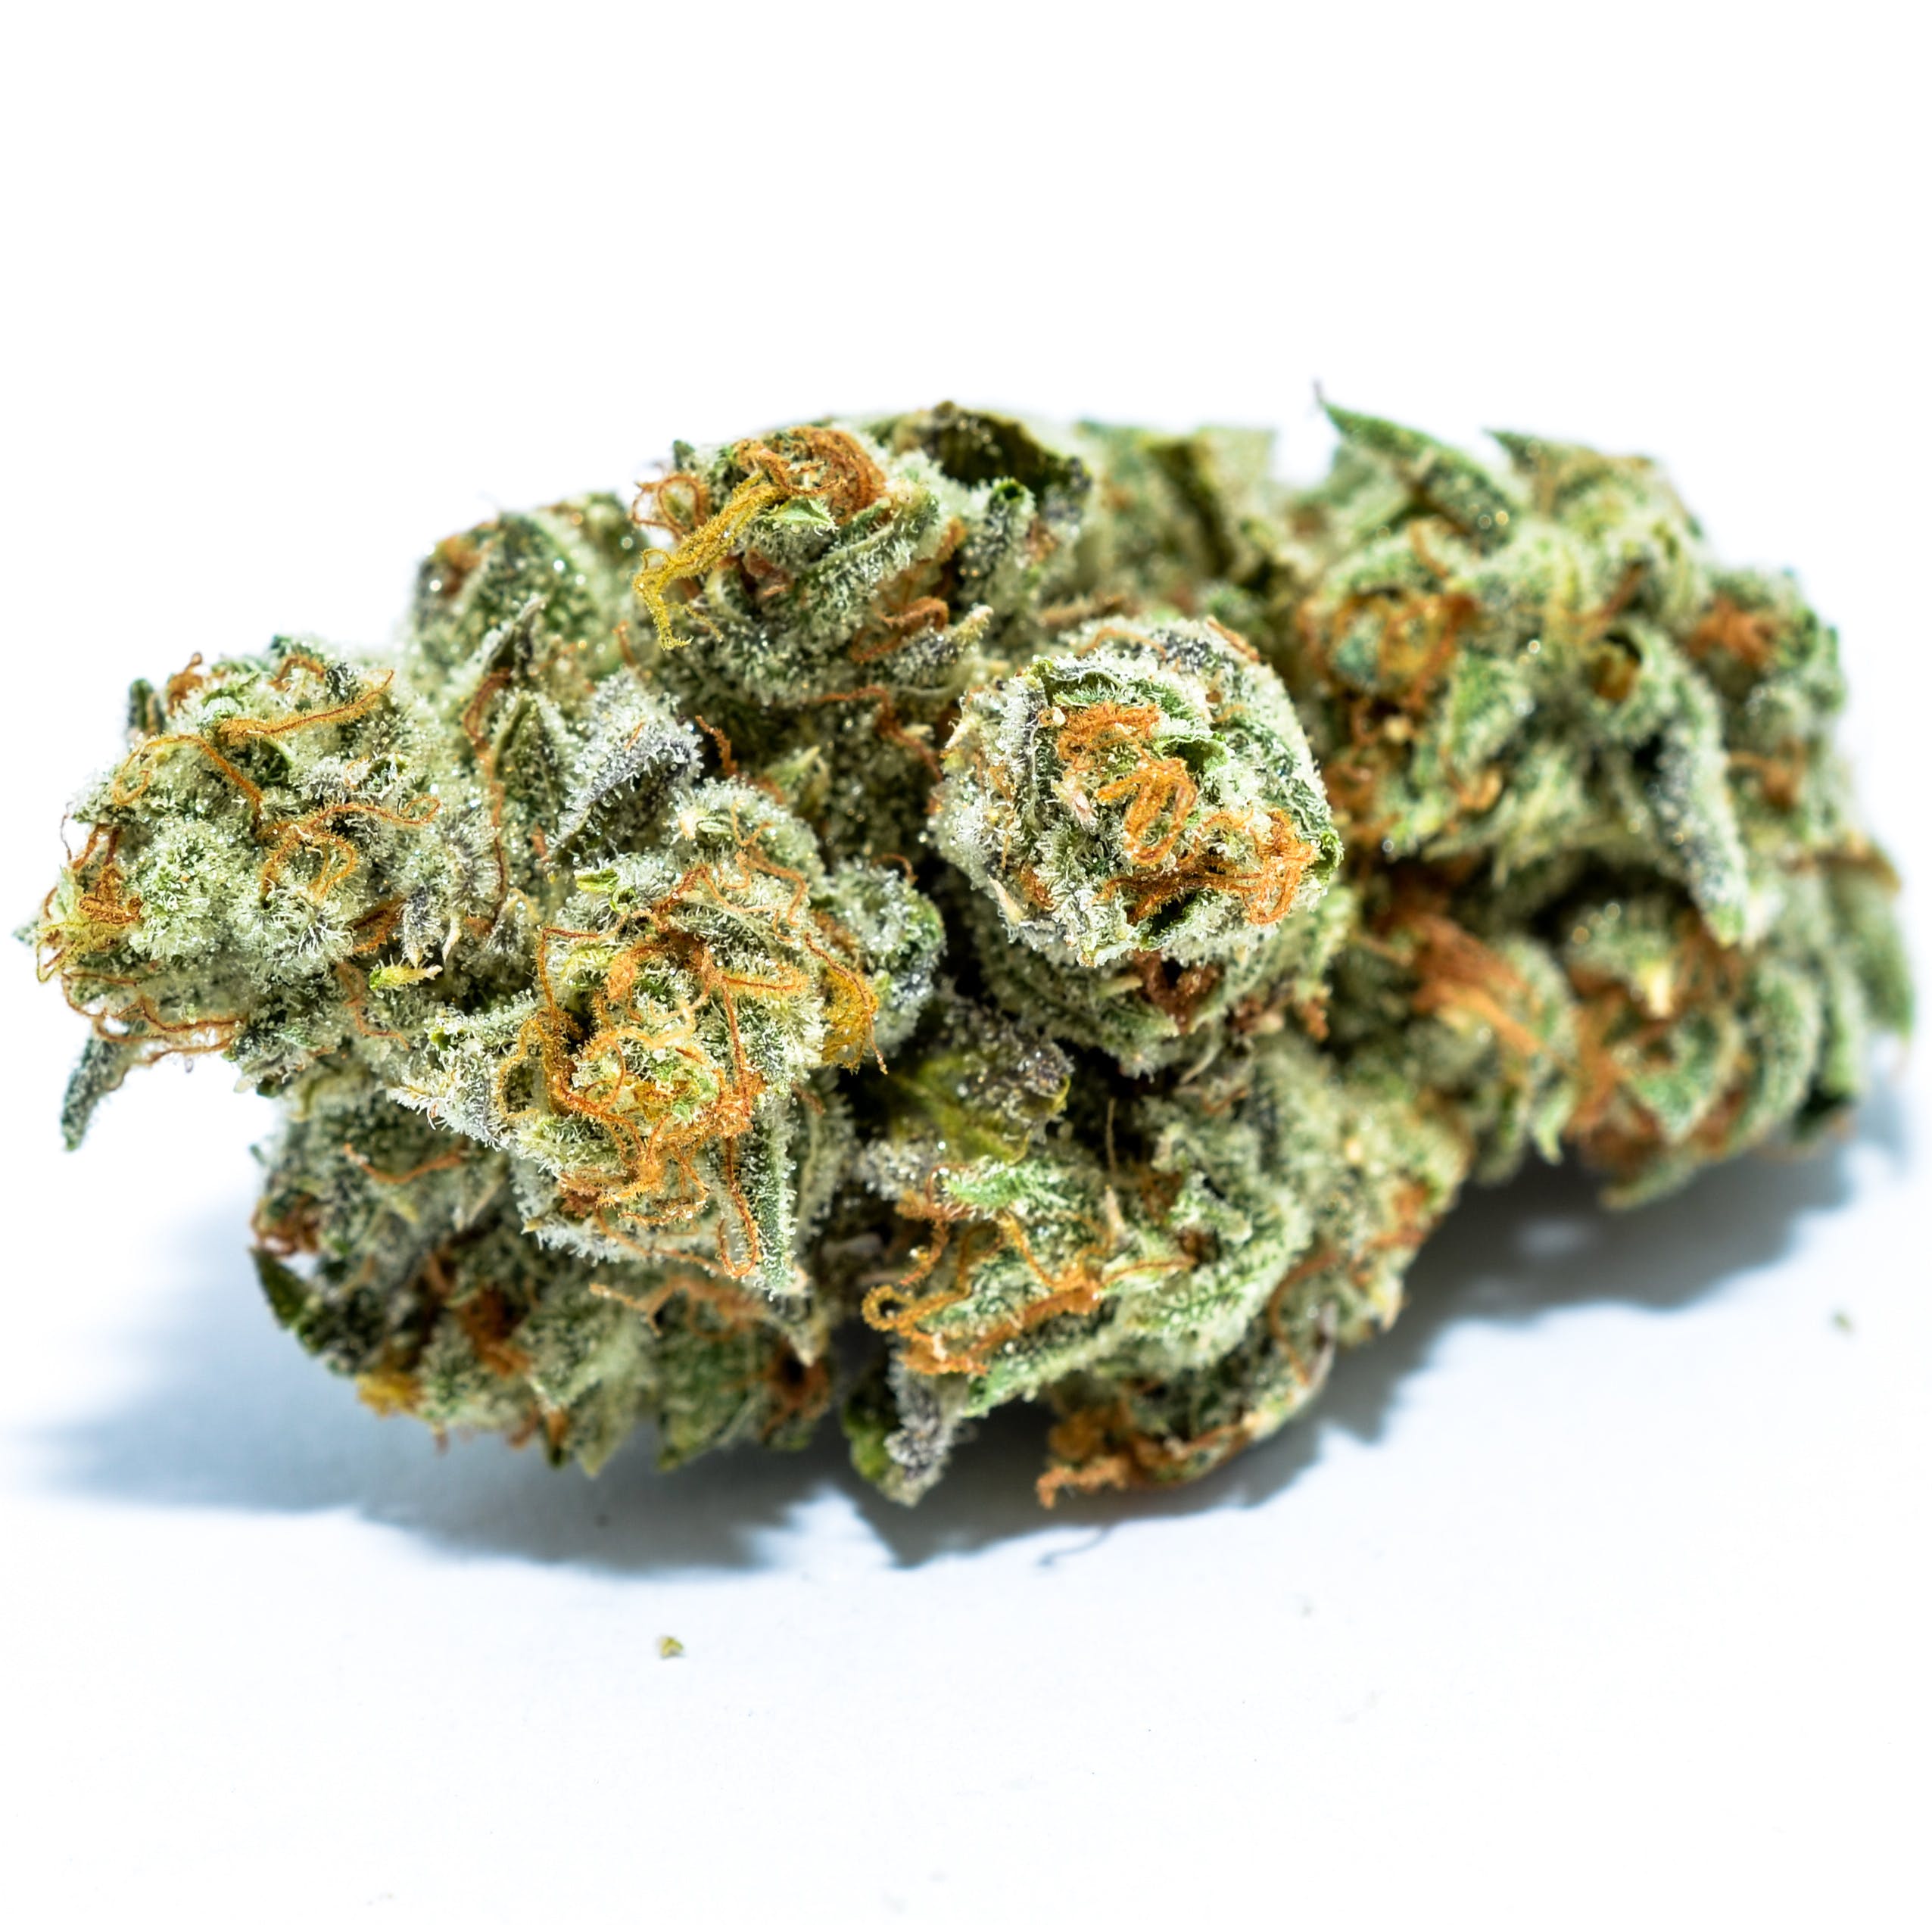 marijuana-dispensaries-city-compassionate-caregivers-ccc-in-los-angeles-thc-design-24k